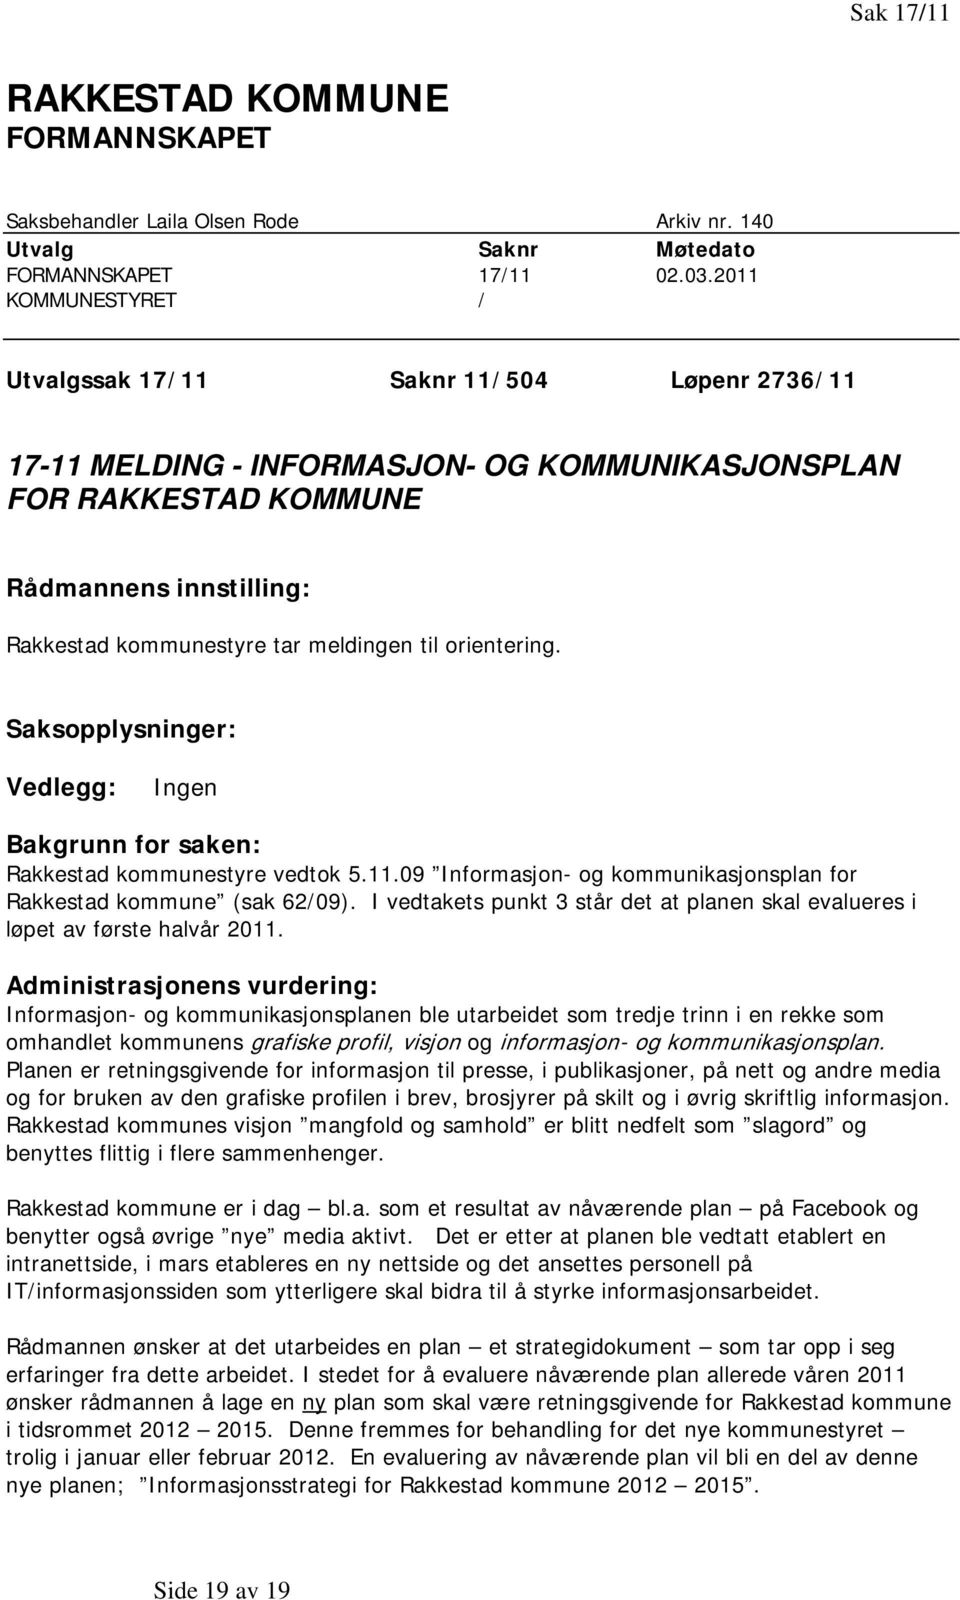 til orientering. Saksopplysninger: Vedlegg: Ingen Bakgrunn for saken: Rakkestad kommunestyre vedtok 5.11.09 Informasjon- og kommunikasjonsplan for Rakkestad kommune (sak 62/09).